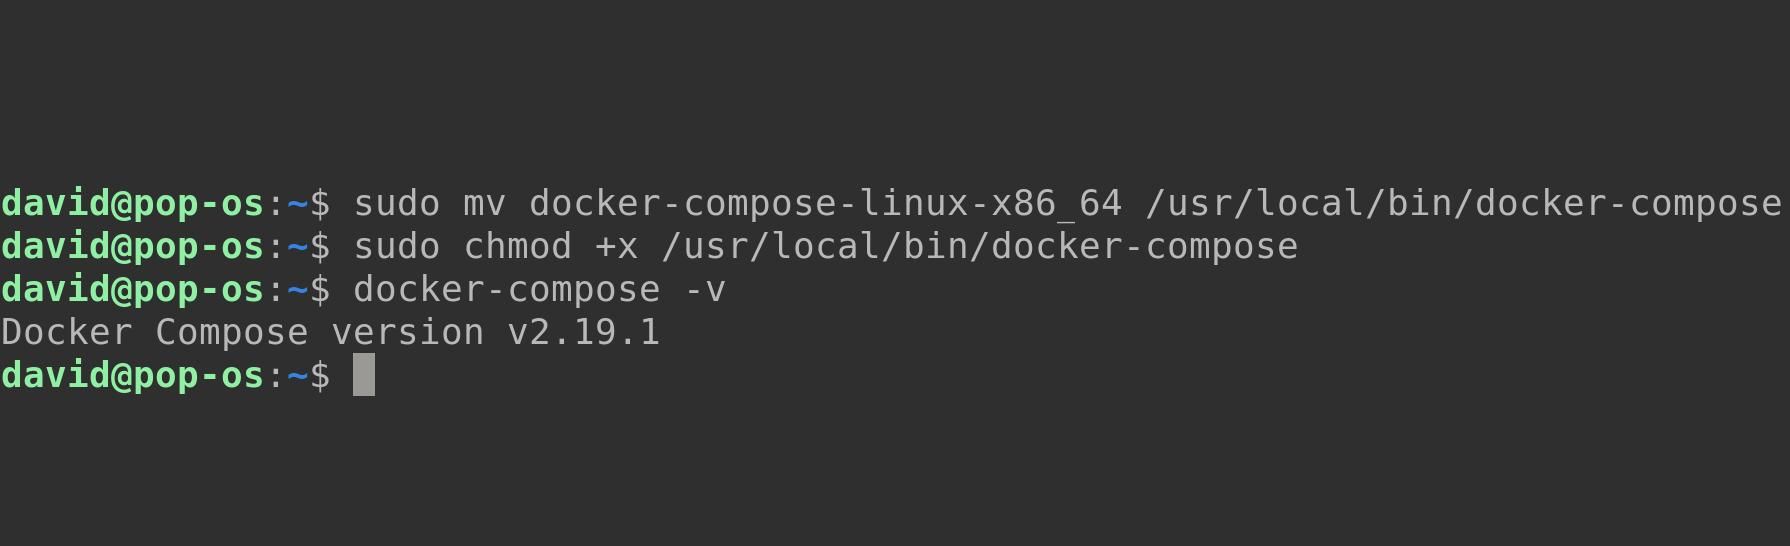 cài đặt thủ công docker-compose nhị phân trên linux